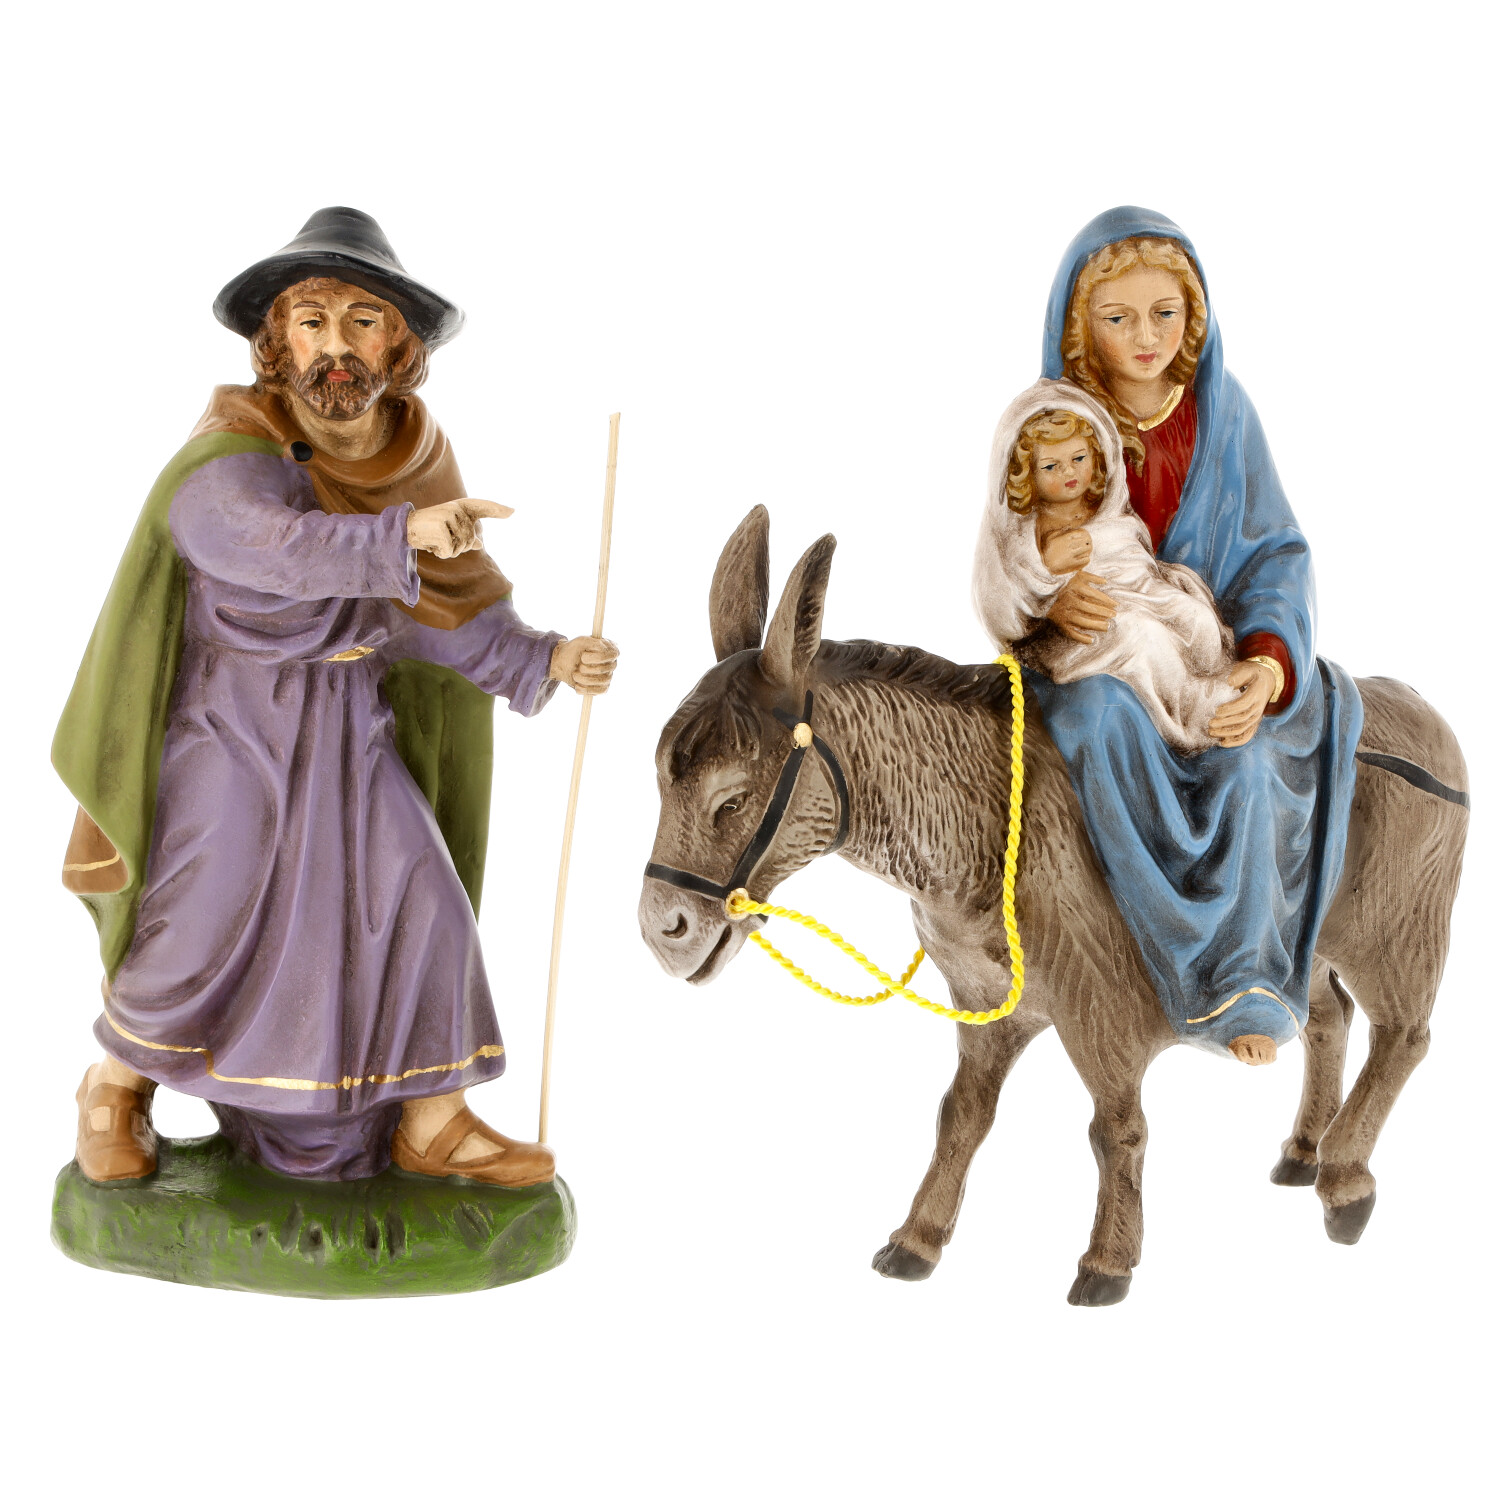 Flight to Egypt - Marolin Nativity fiogures - made in Germany